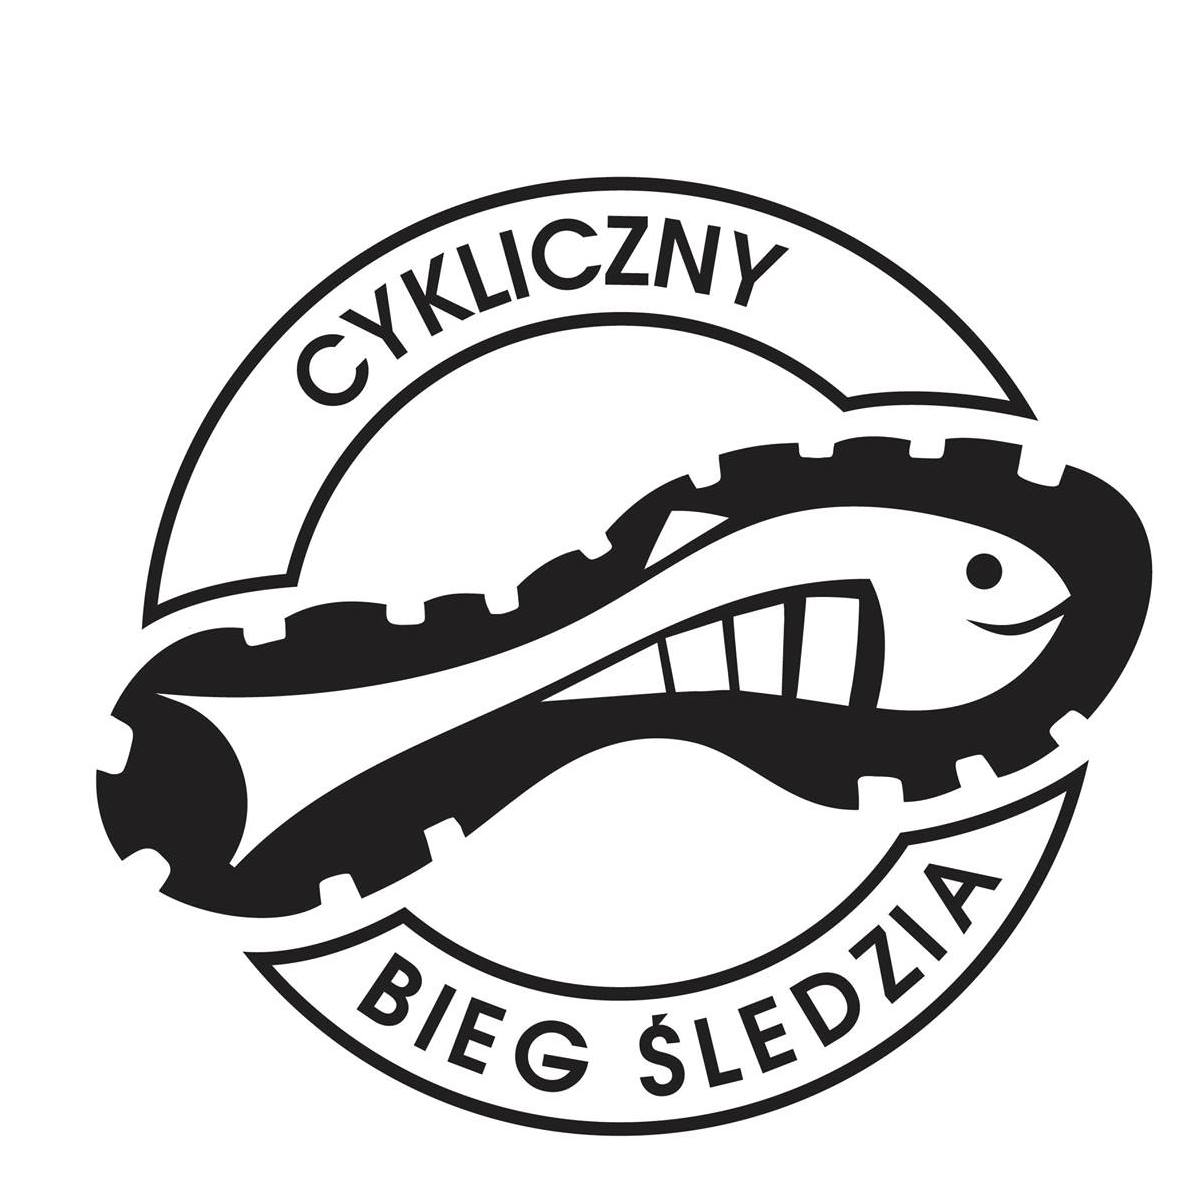 logo cyklicznego biegu śledzia